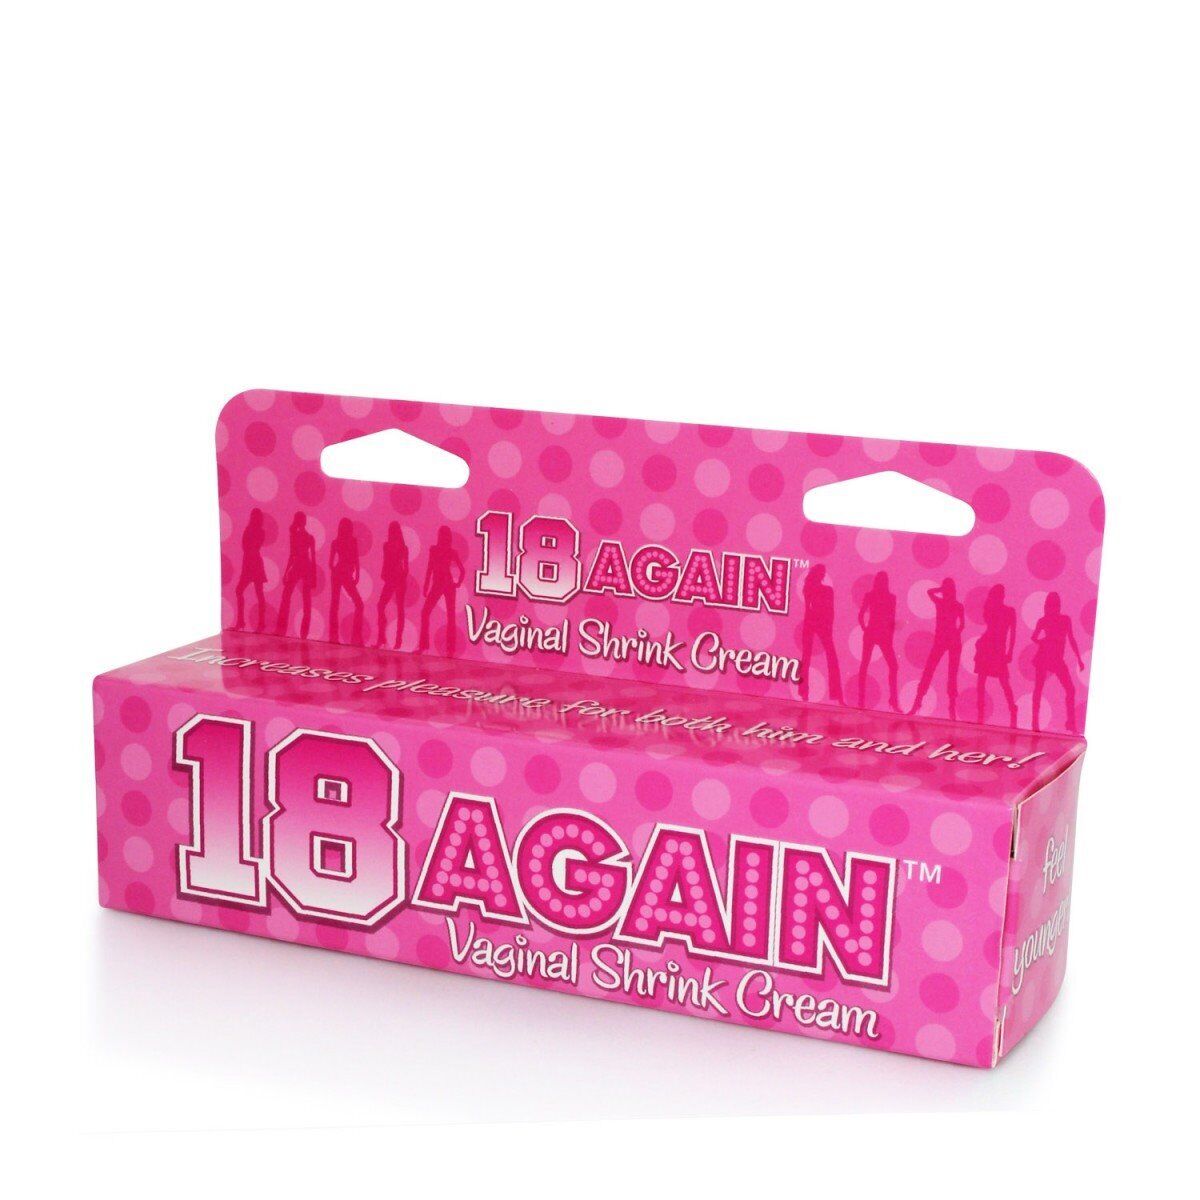 18 Again Female Vaginal Cream Tightener Tightening Enhancer 1.5 oz